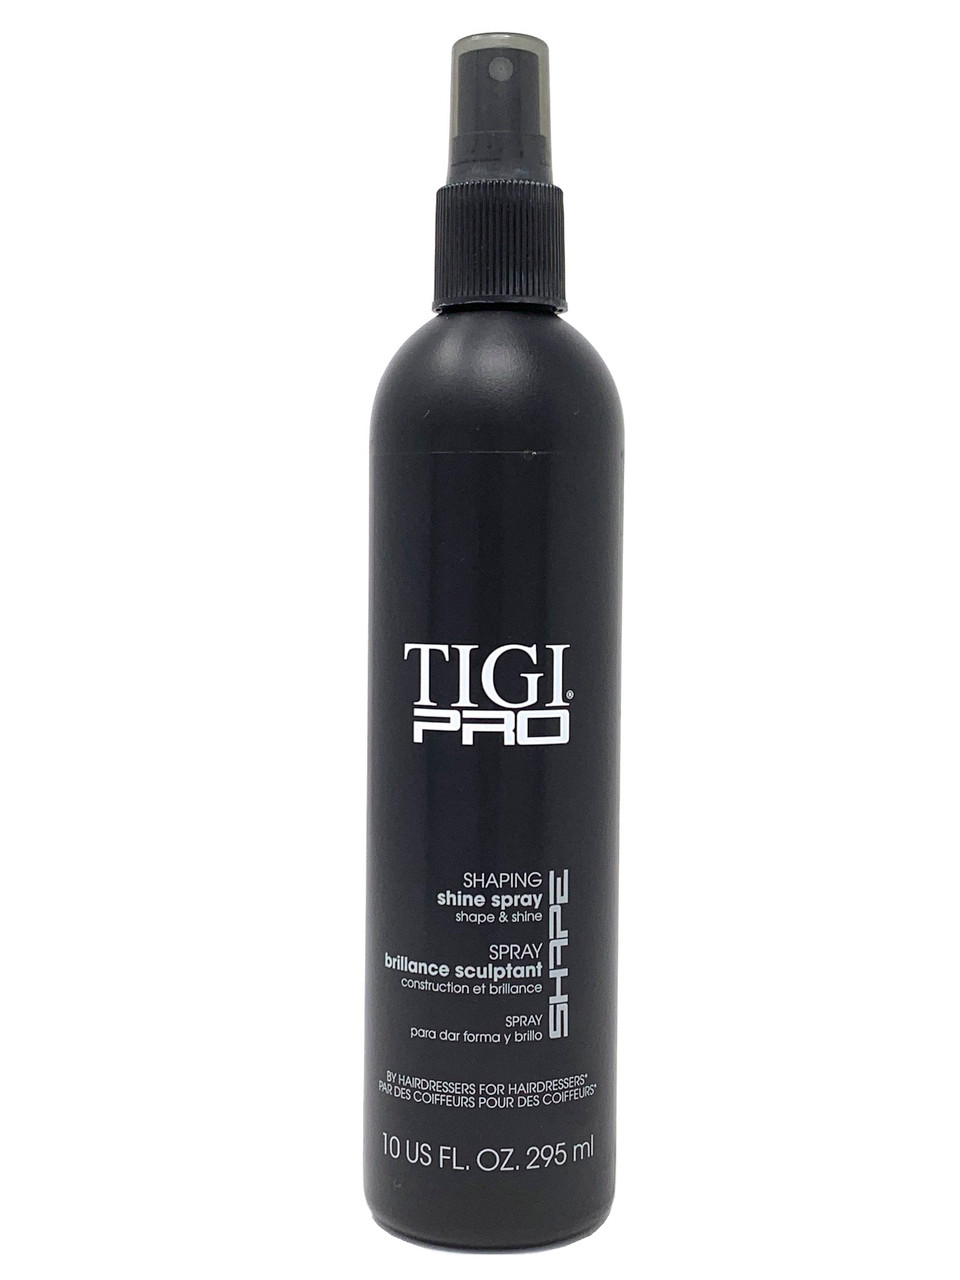 TIGI PRO Shaping Spray 10 oz - Clear Beauty Co